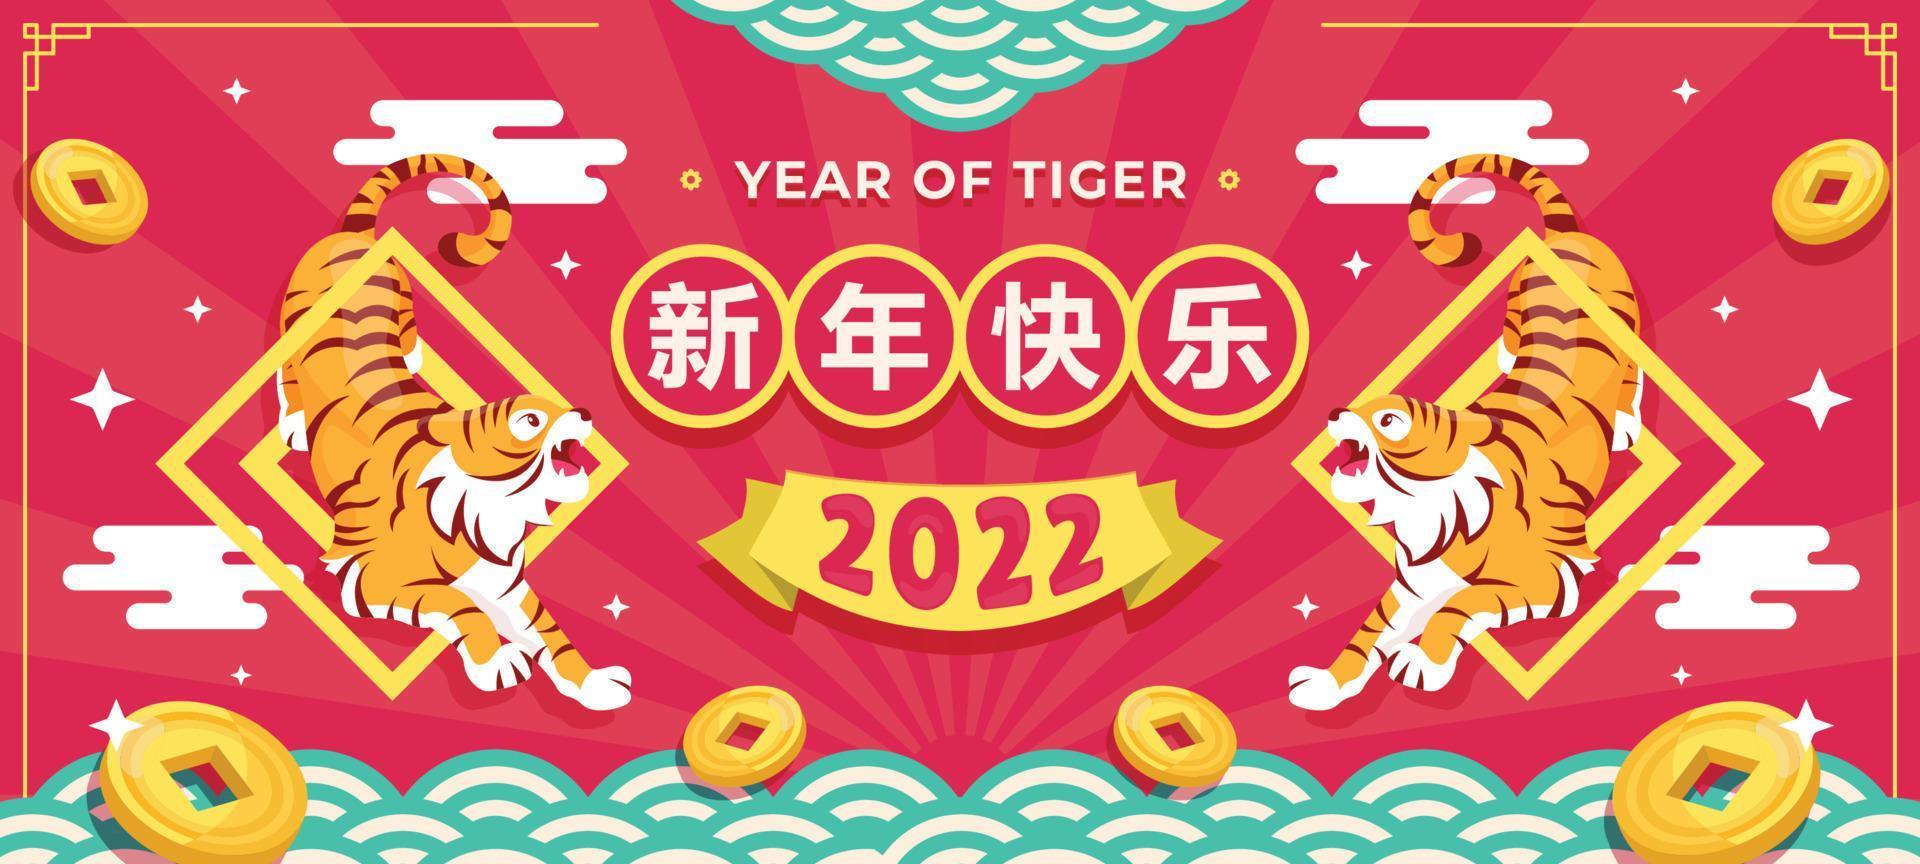 fond de tigre d'eau de nouvel an chinois de style plat vecteur